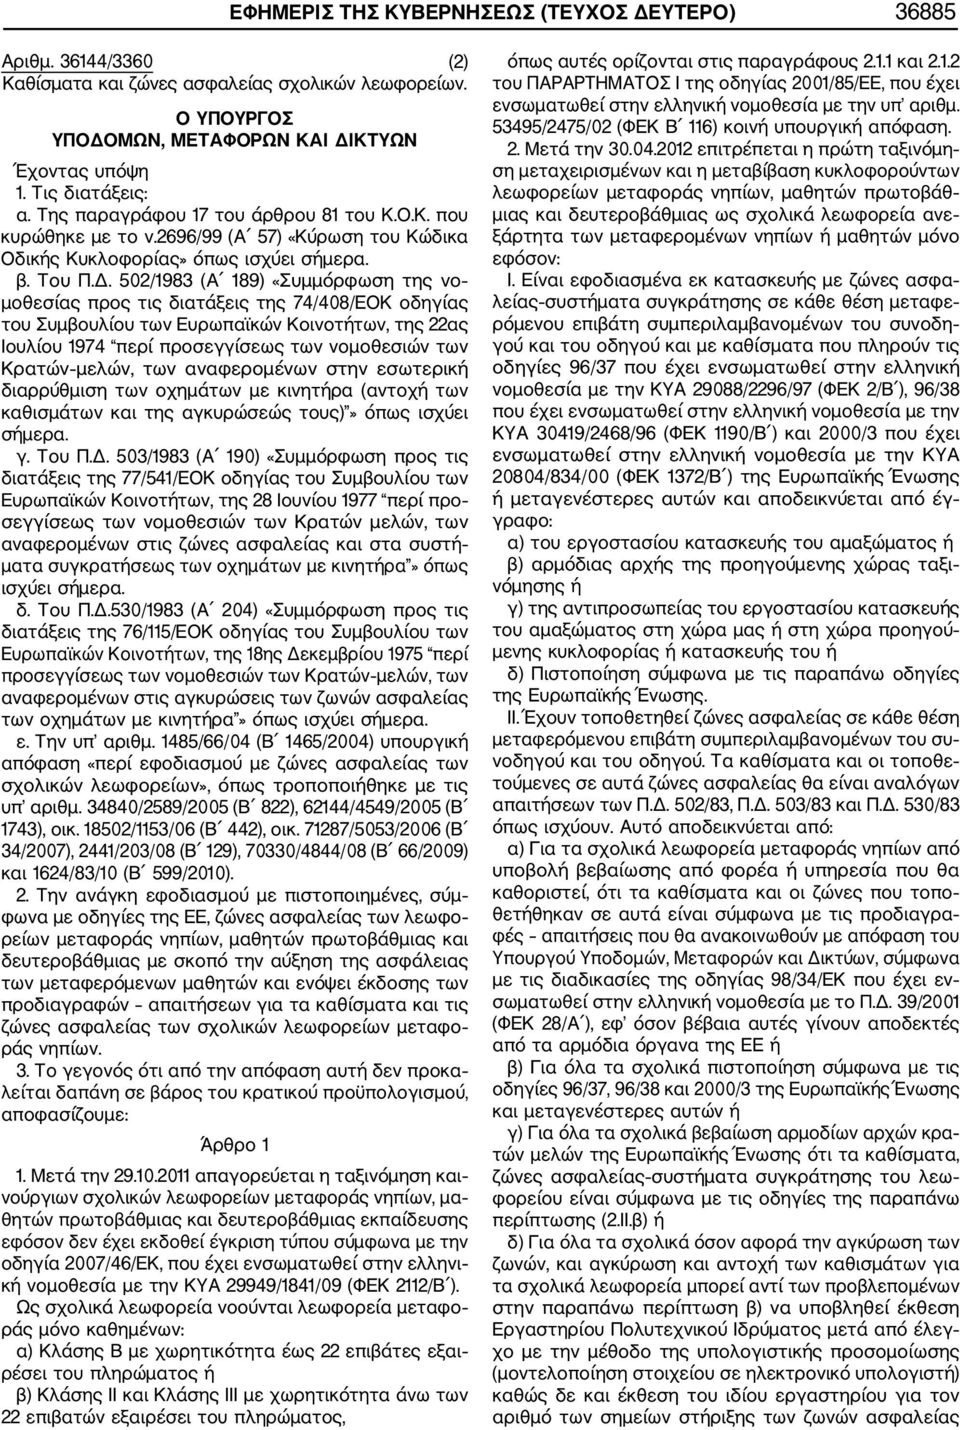 502/1983 (Α 189) «Συμμόρφωση της νο μοθεσίας προς τις διατάξεις της 74/408/ΕΟΚ οδηγίας του Συμβουλίου των Ευρωπαϊκών Κοινοτήτων, της 22ας Ιουλίου 1974 περί προσεγγίσεως των νομοθεσιών των Κρατών